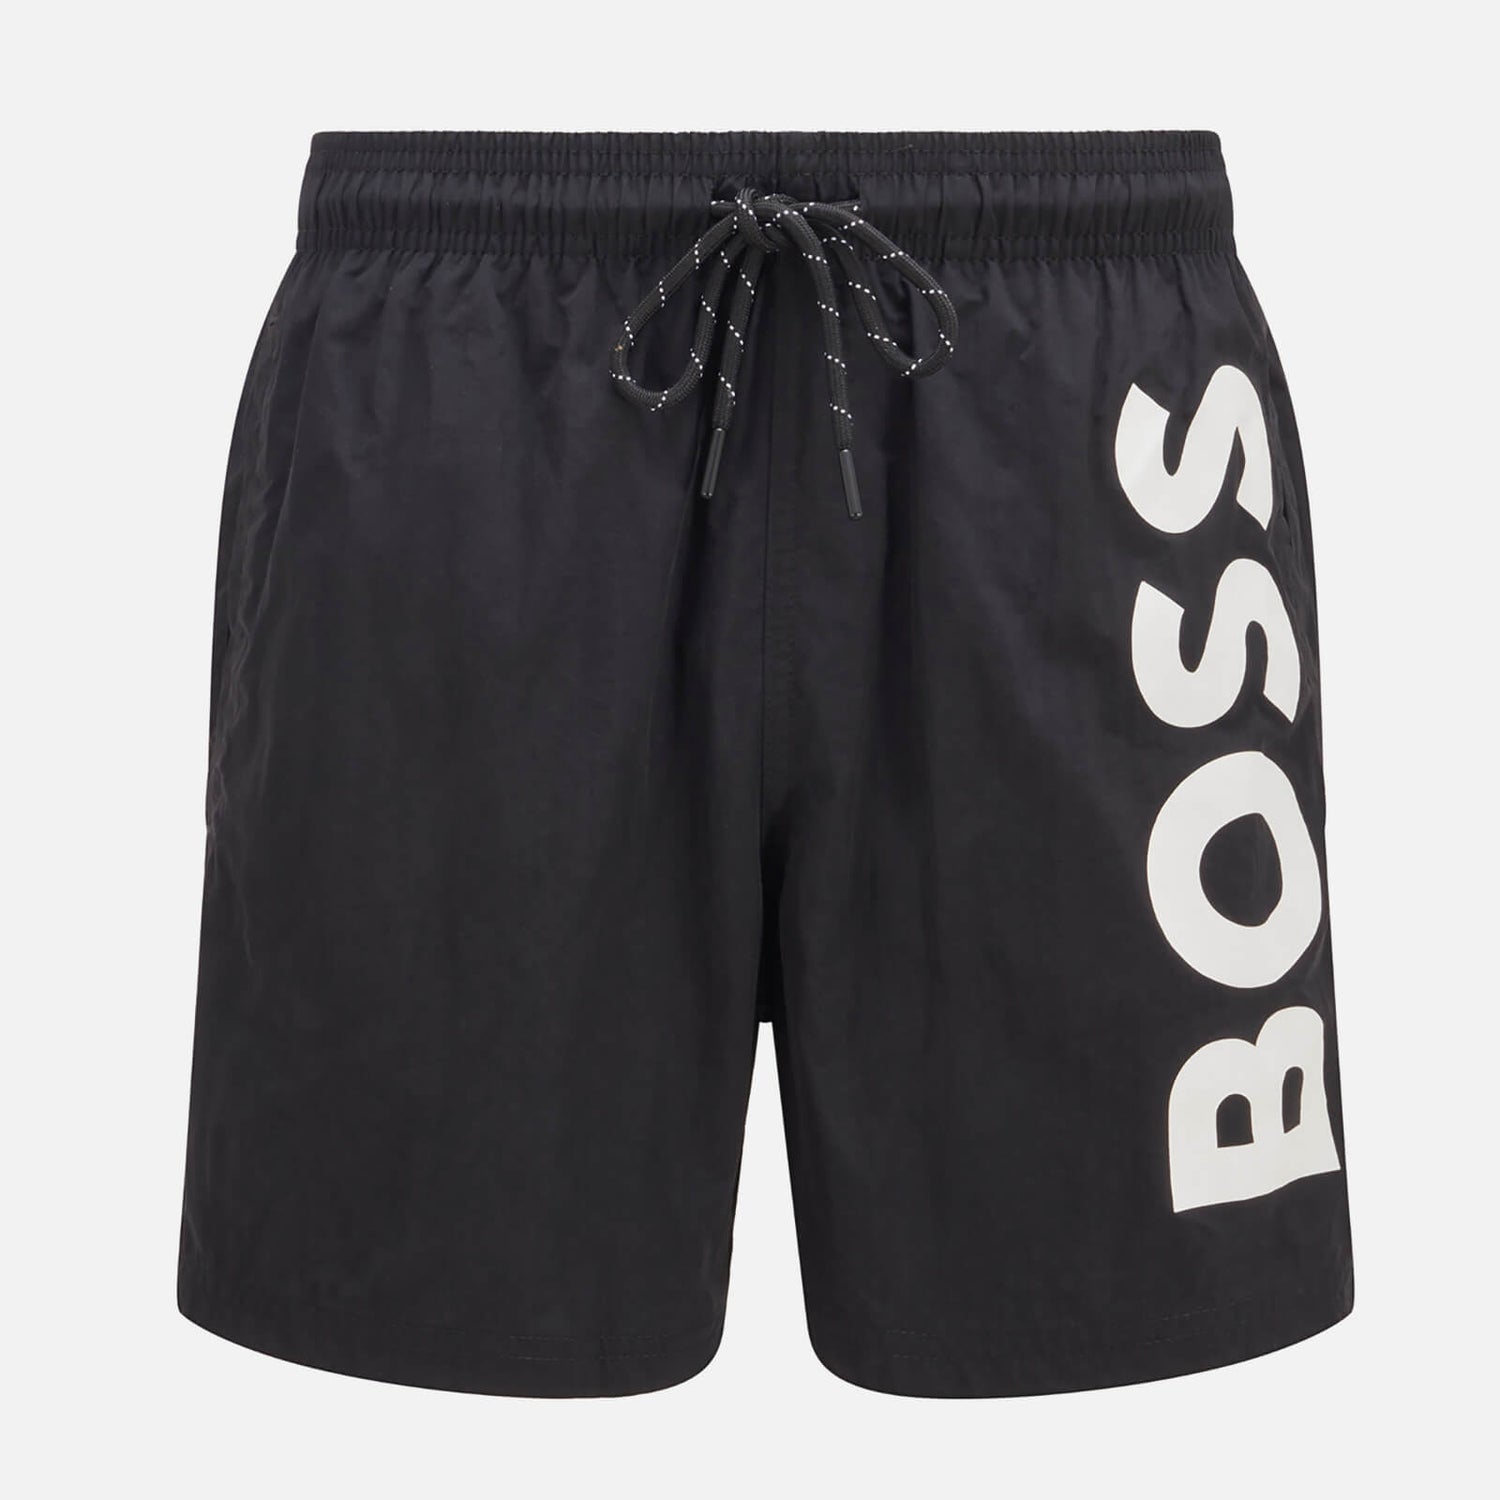 BOSS Bodywear Men's Octopus Swim Shorts - Black - S